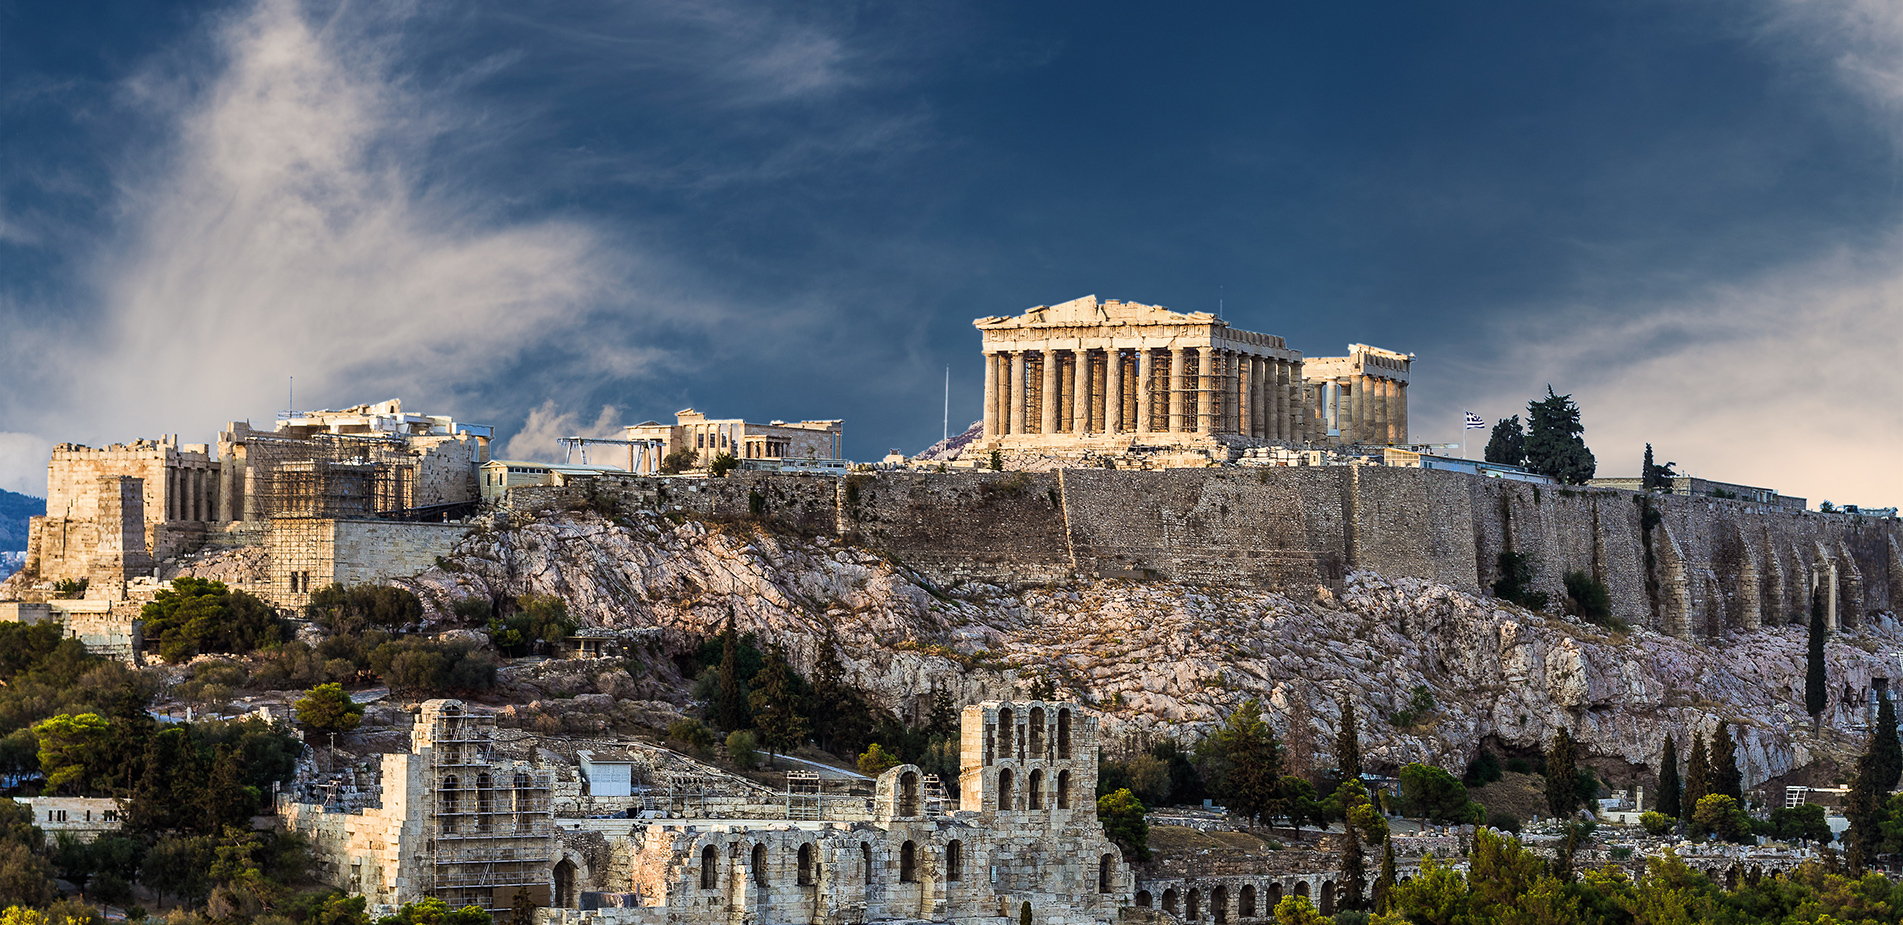 Τα δημοφιλέστερα επαγγέλματα στην αρχαία Ελλάδα και η δουλειά που κανείς δεν ήθελε να κάνει